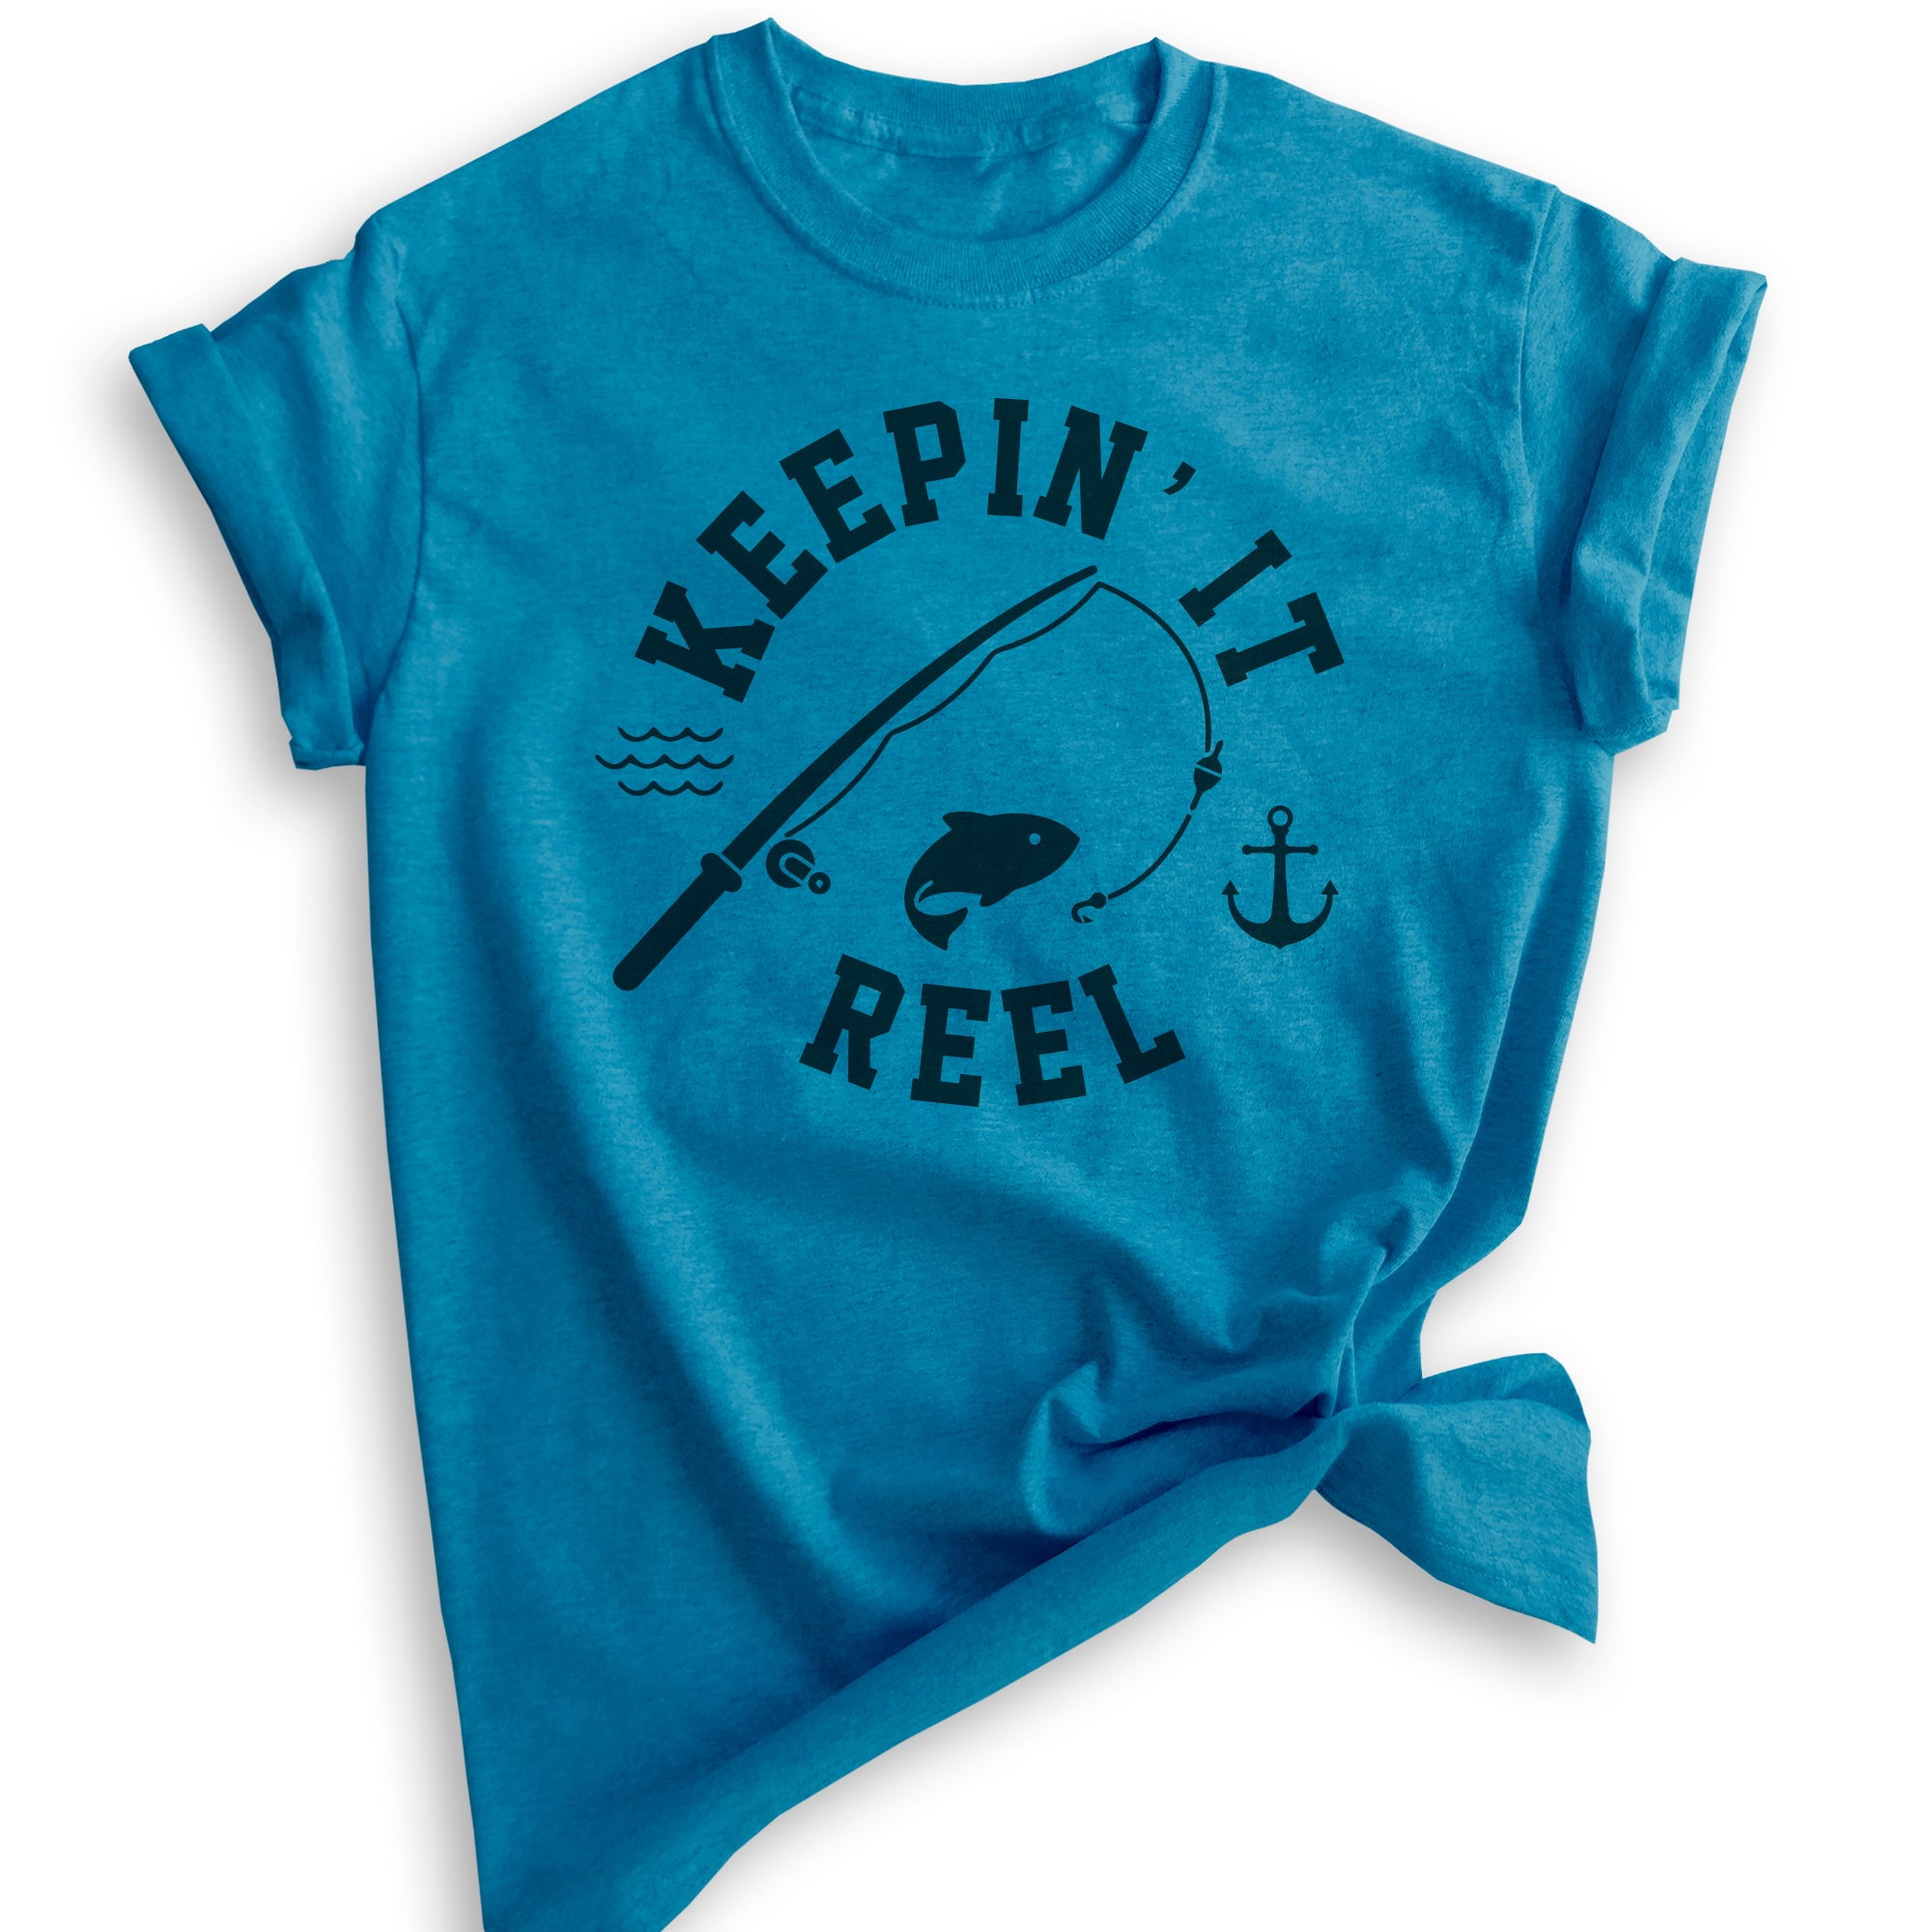 Men's Blue Short Sleeve Fishing Shirt – Reel Animals Fishing